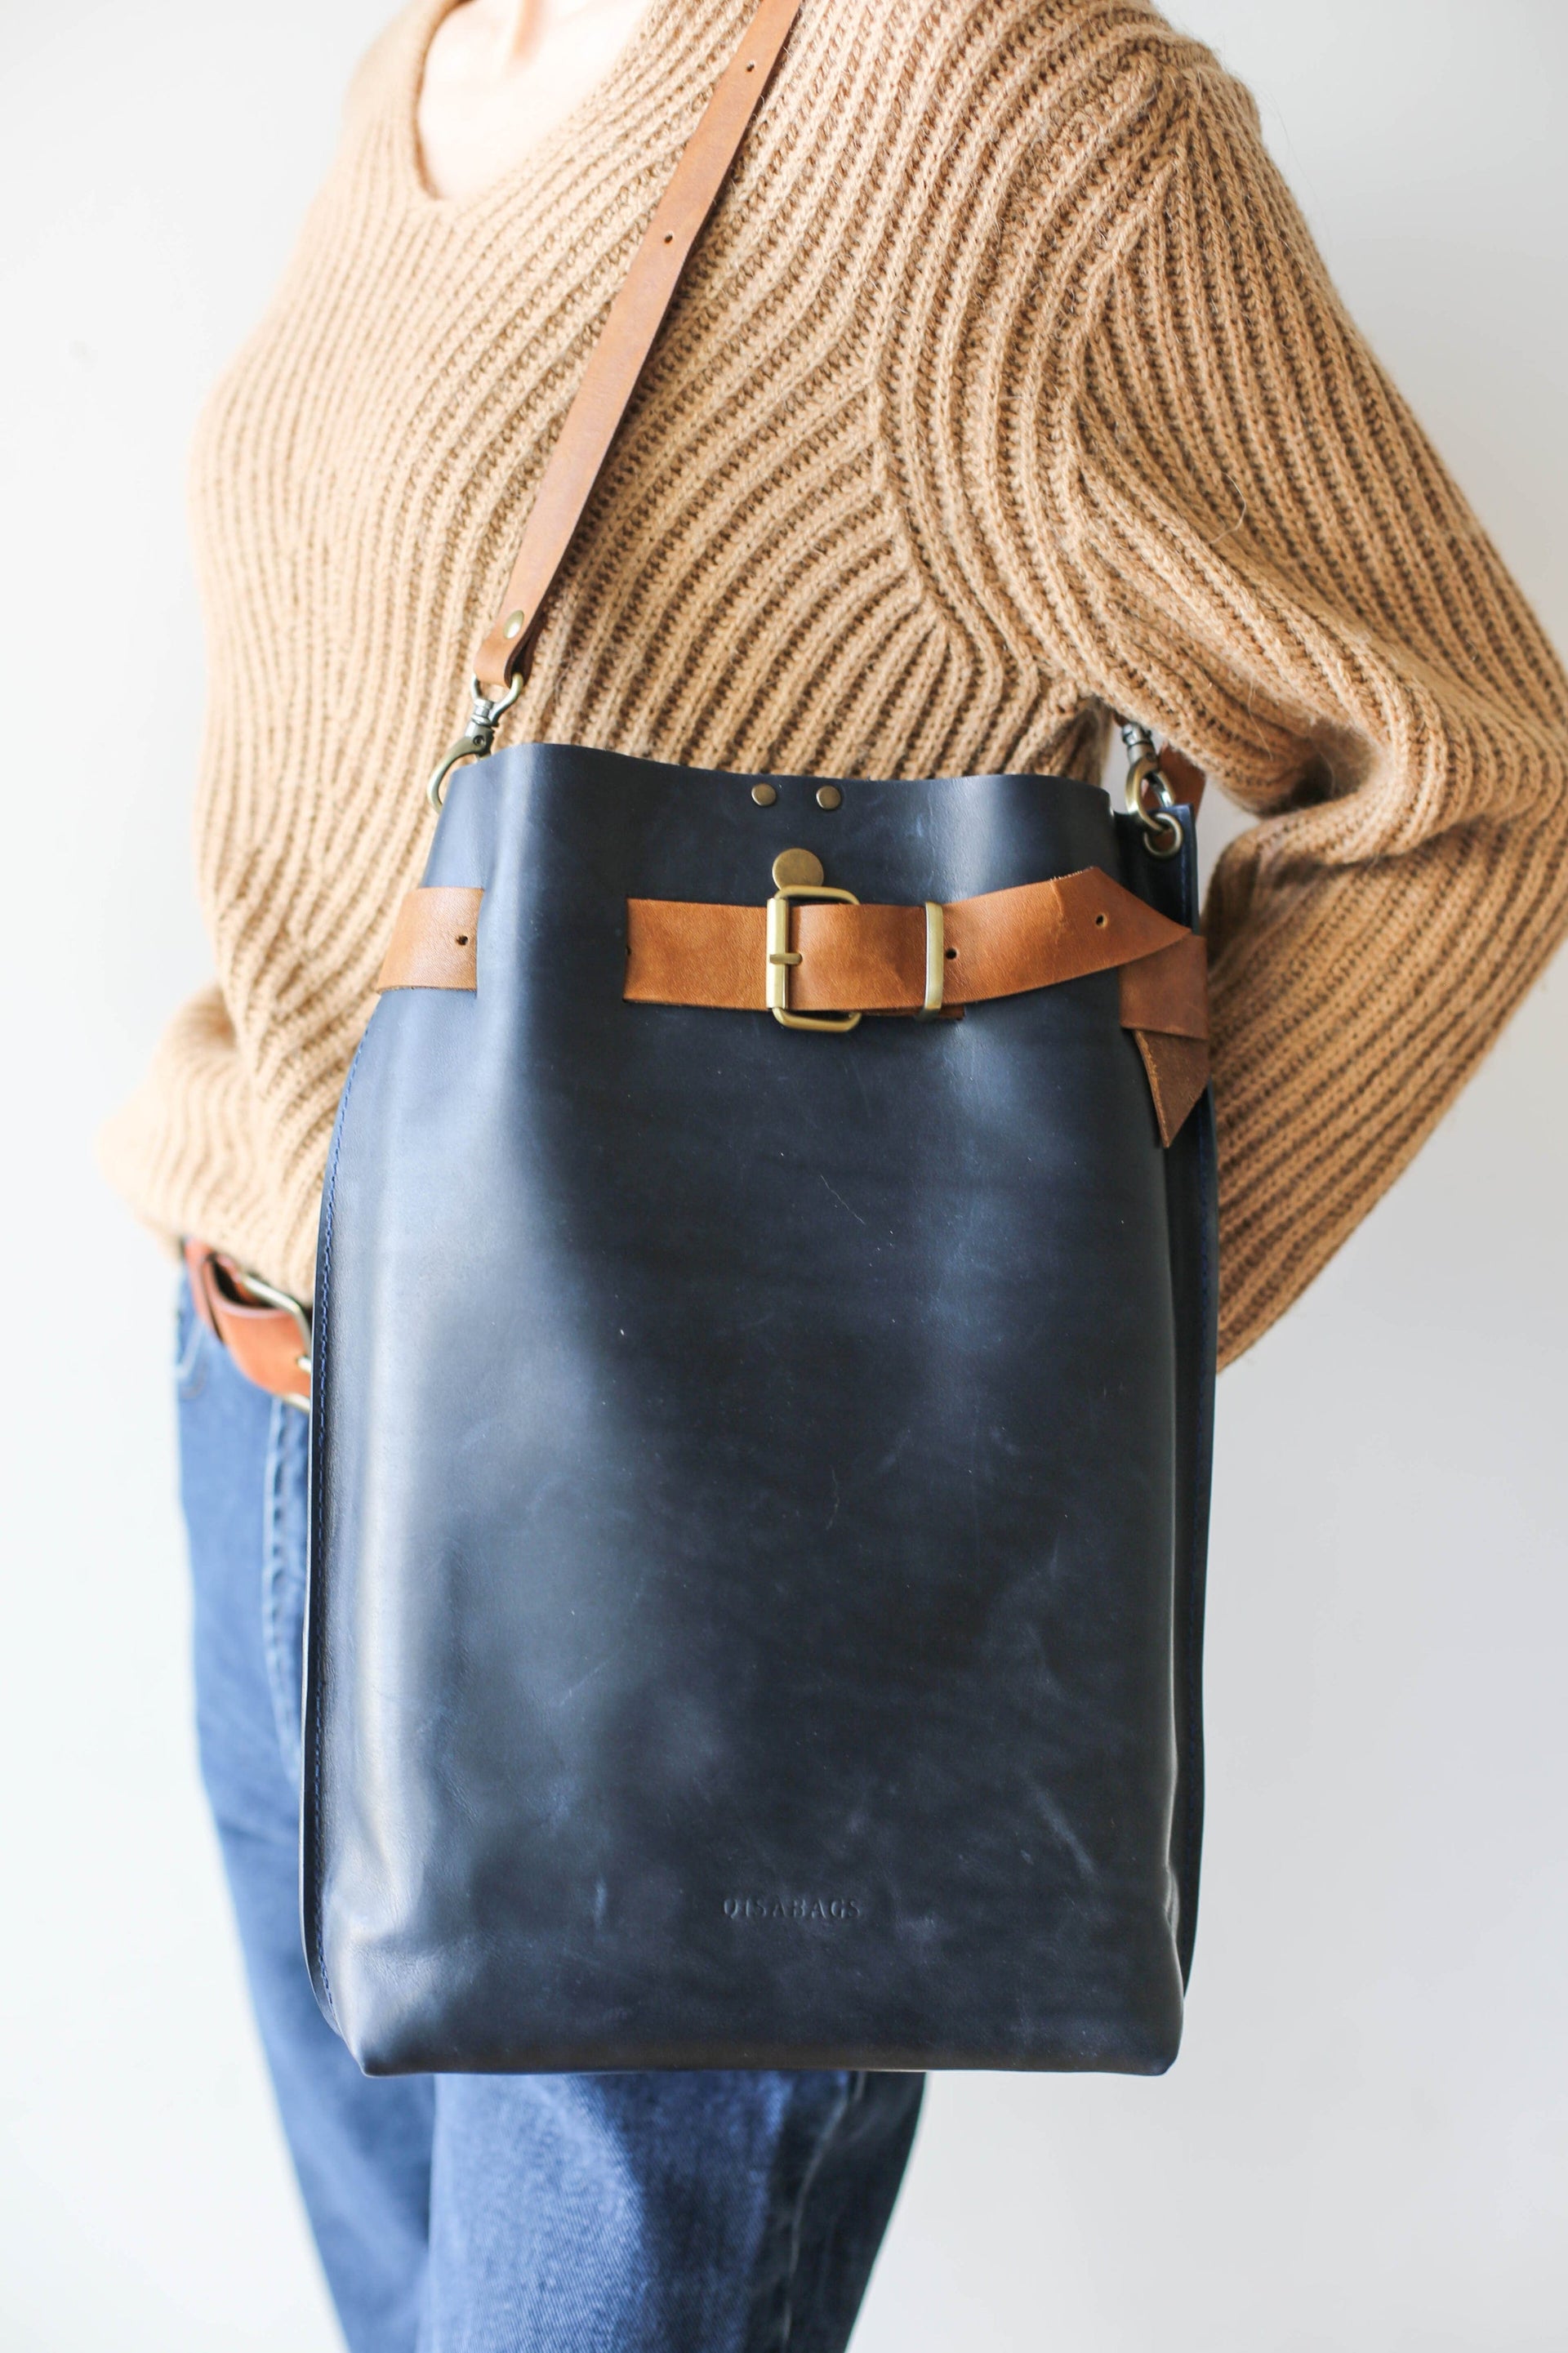  minimalist leather bag